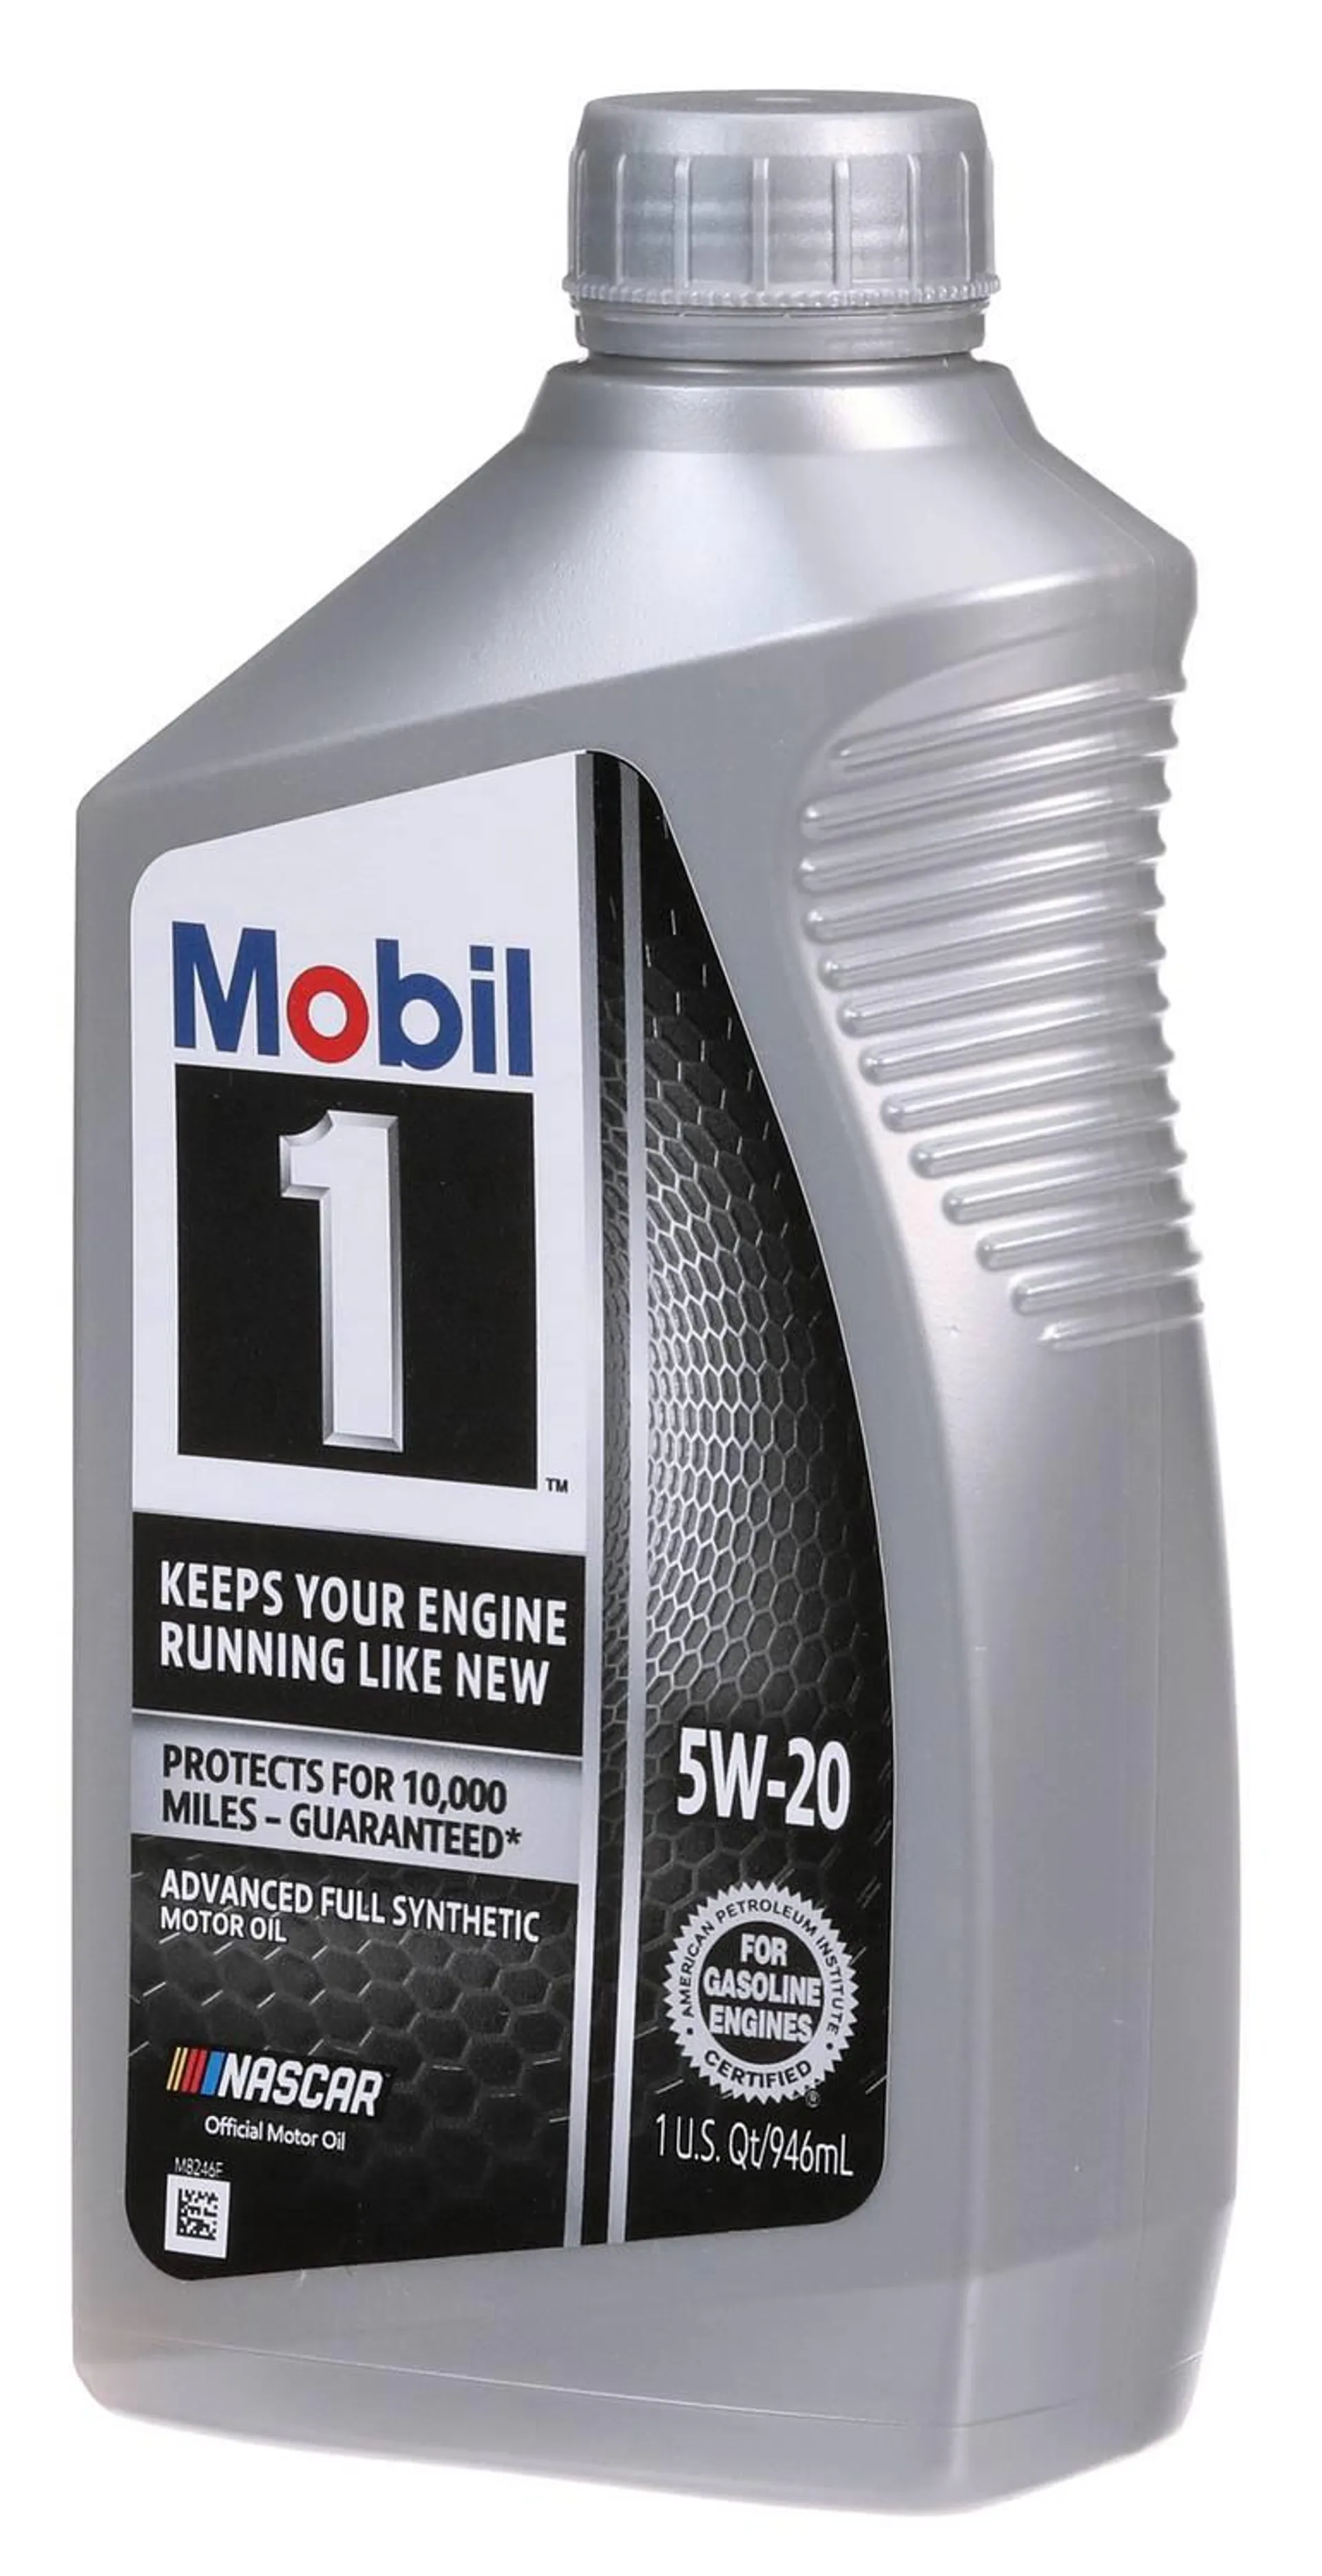 Mobil 1 Advanced Full Synthetic Motor Oil 5W-20 1 Quart - 1-5-20